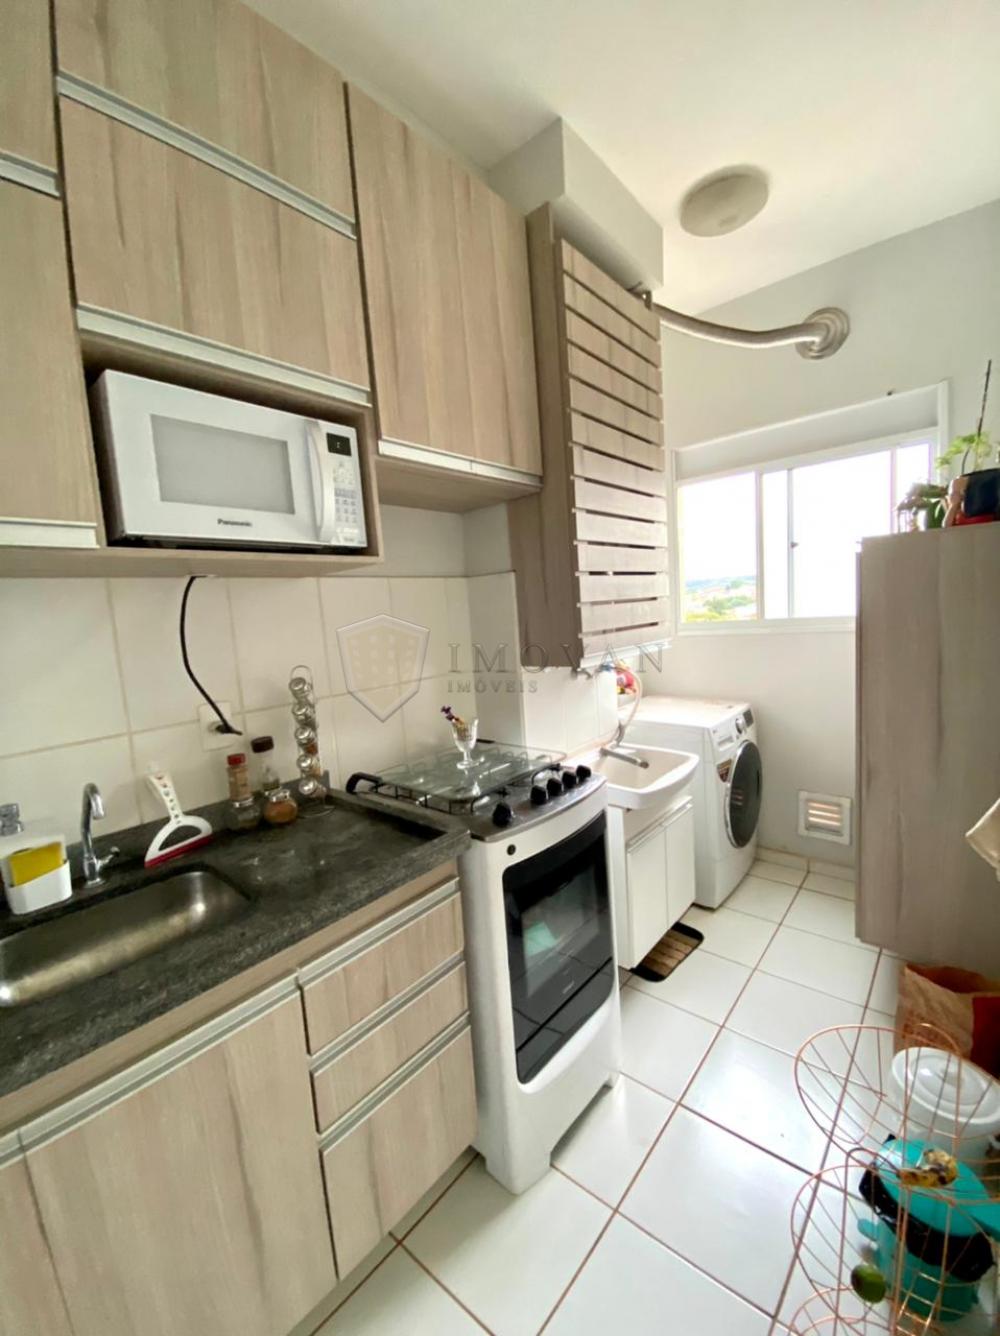 Comprar Apartamento / Padrão em Ribeirão Preto R$ 190.000,00 - Foto 14